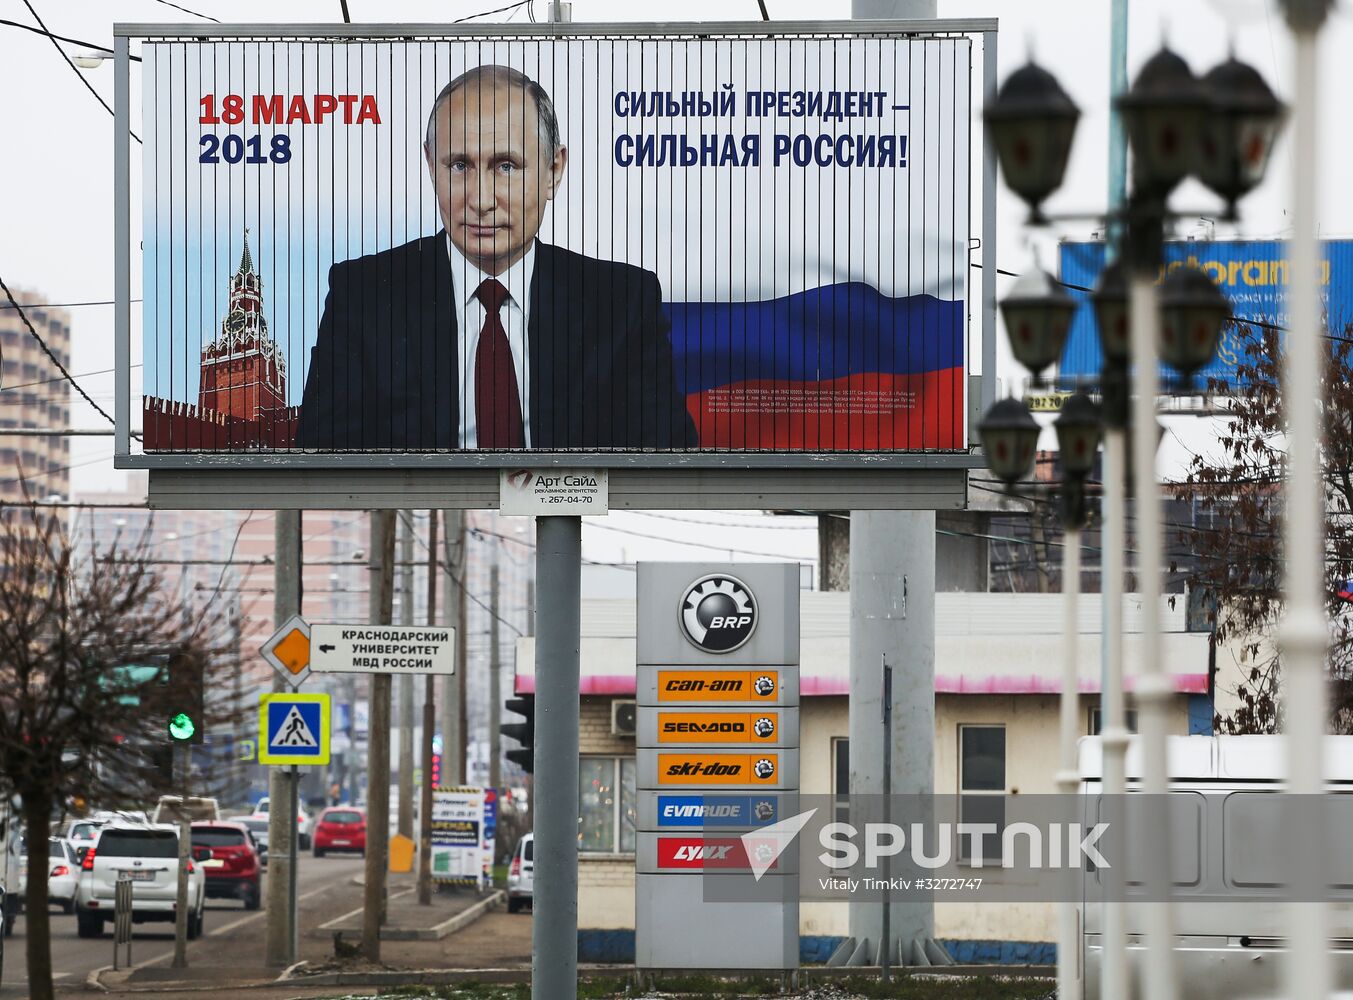 Election campaigning in Krasnodar